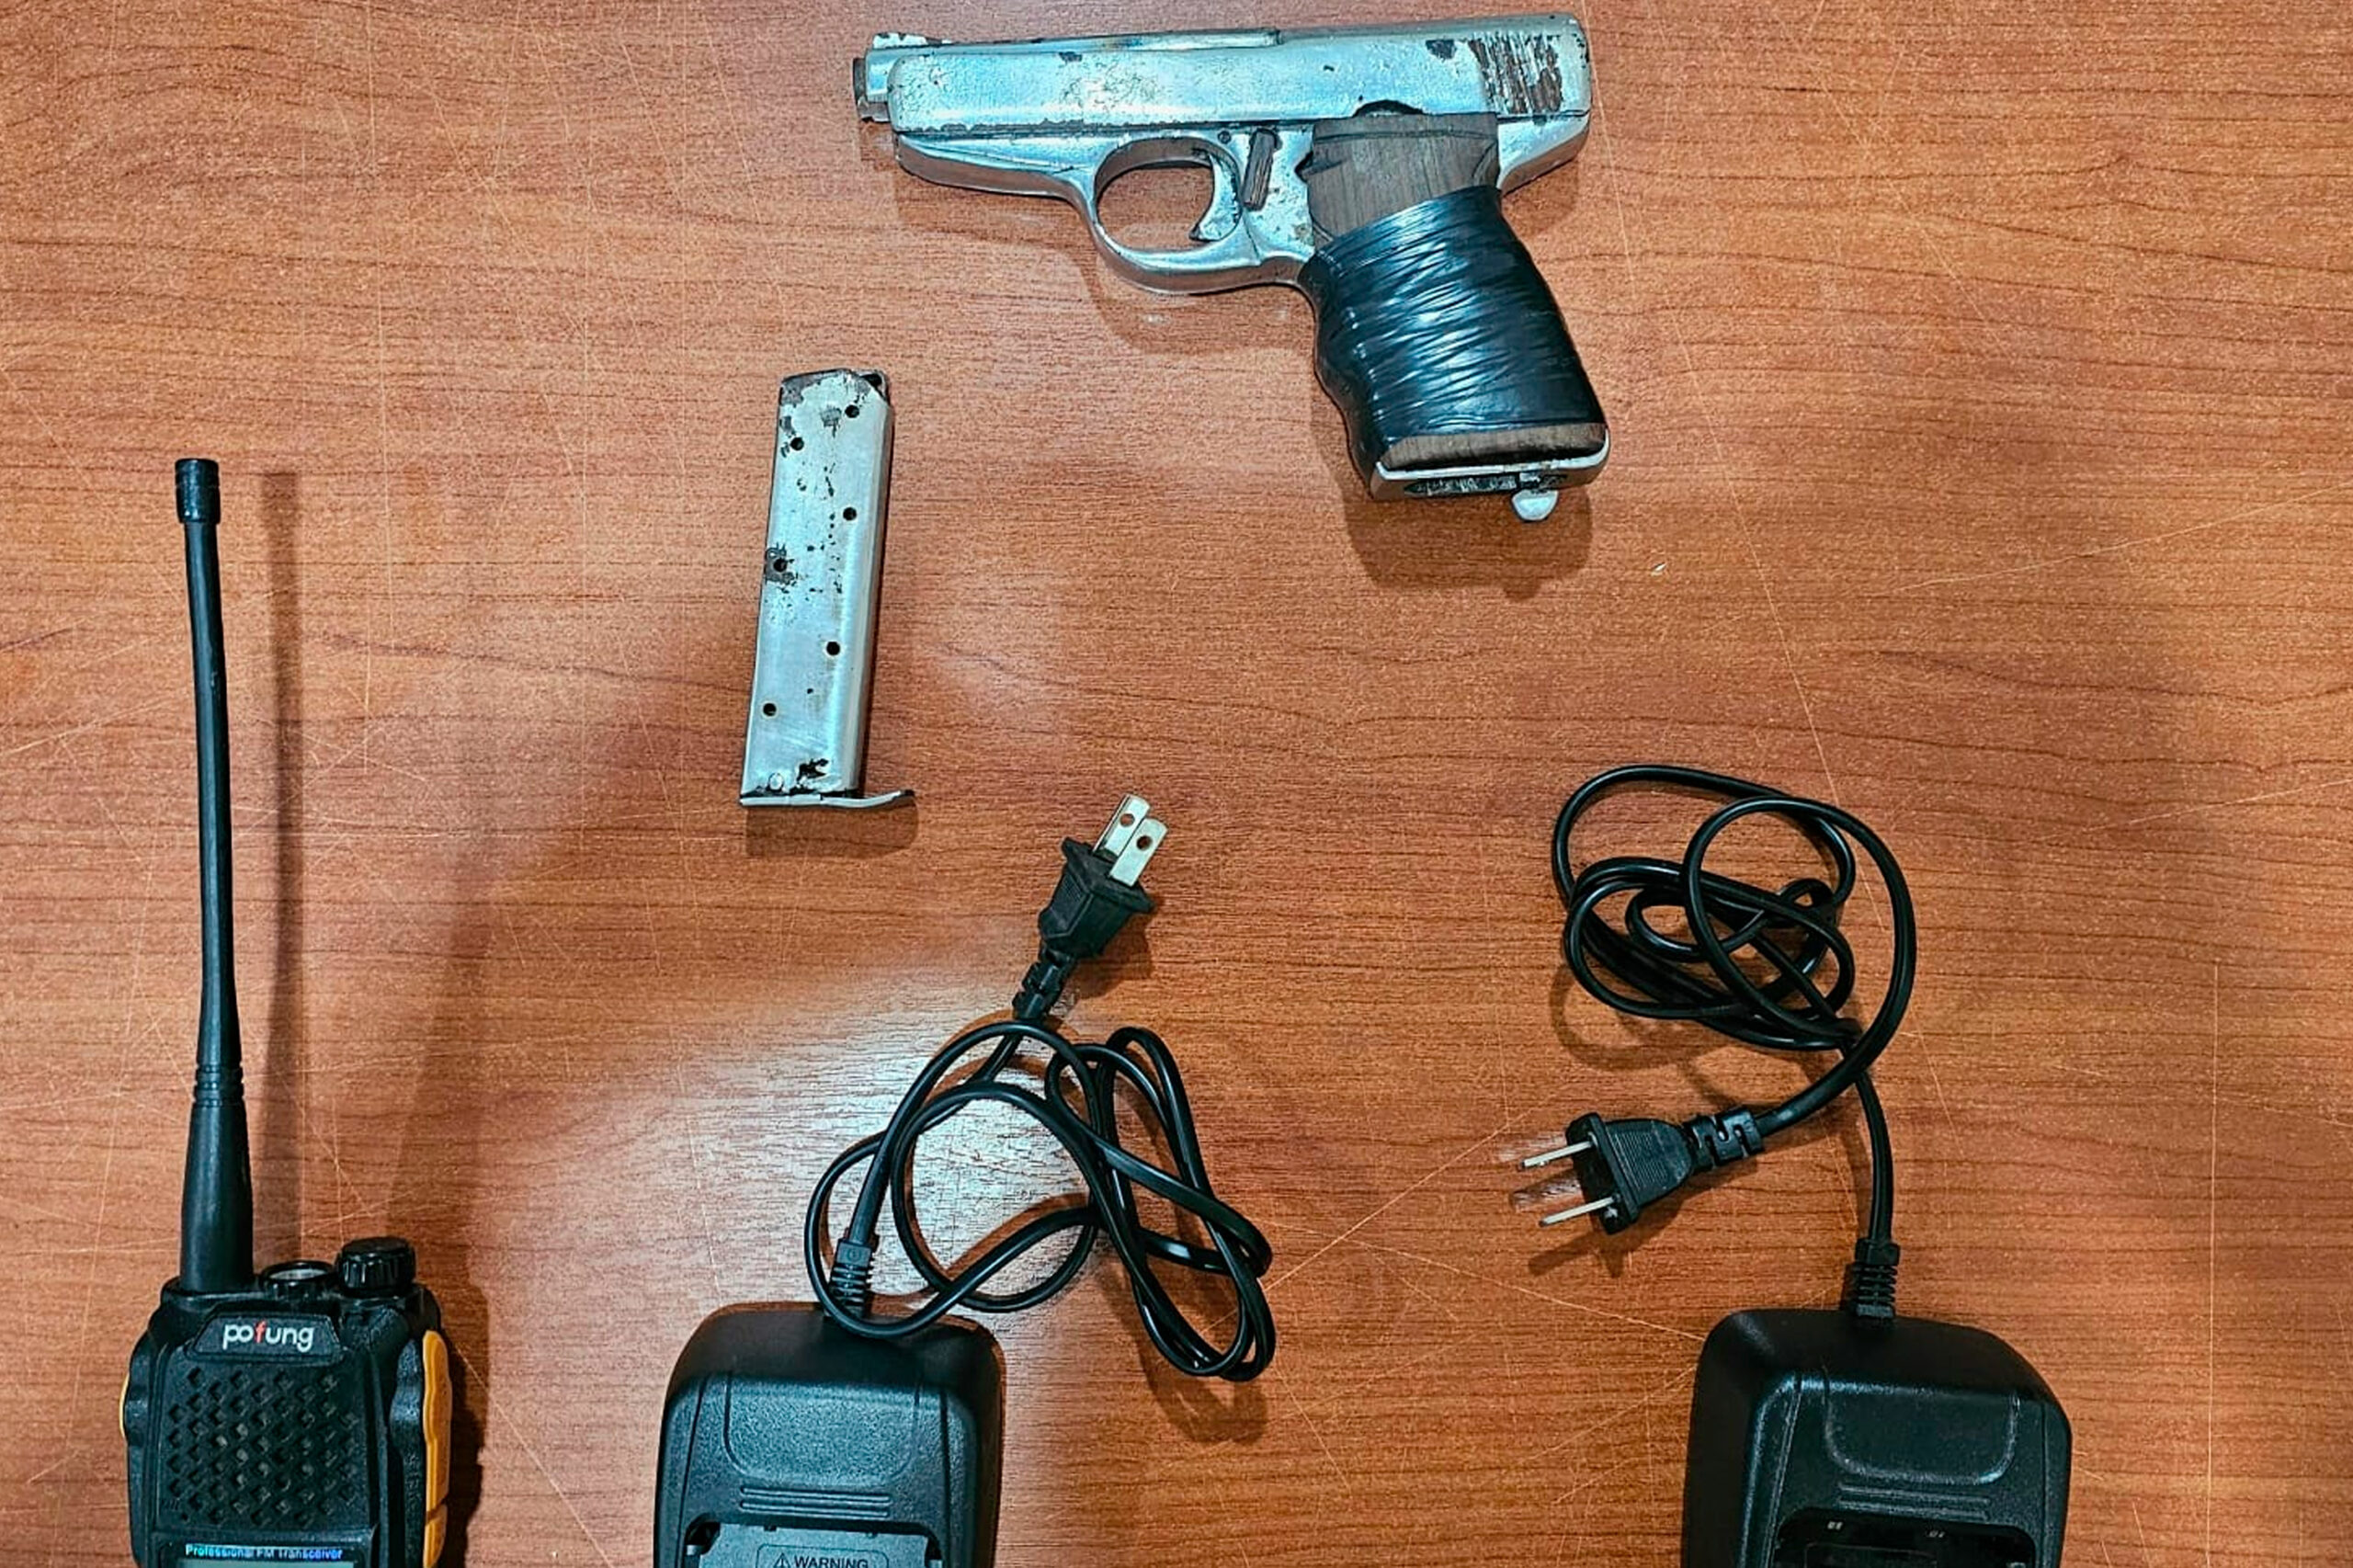 Un pistola y equipos de comunicación fueron localizados en una vivienda ocupada por Los Tiguerones en Guayaquil